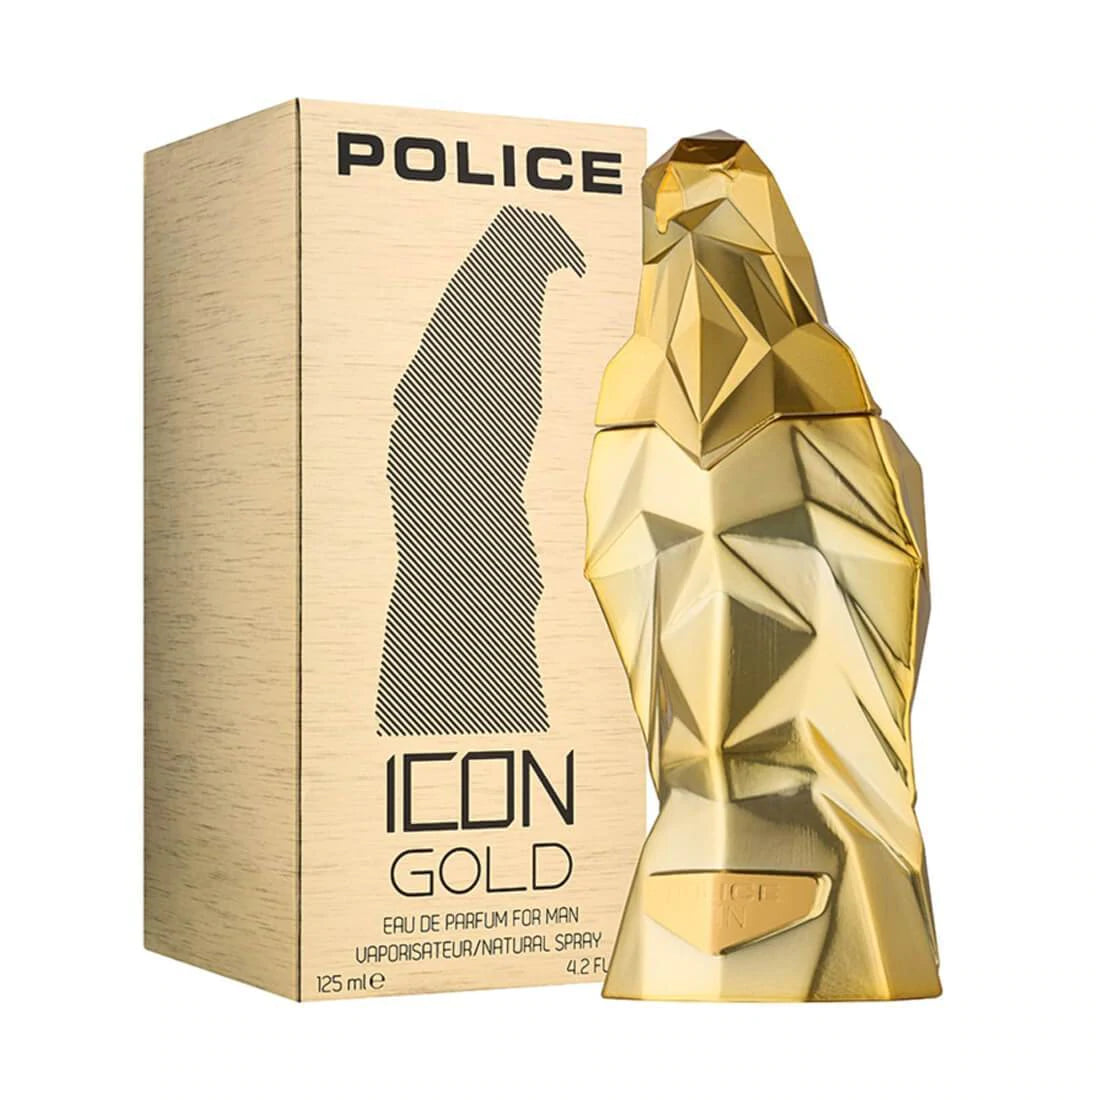 Police Icon Gold Eau De Parfum For Men